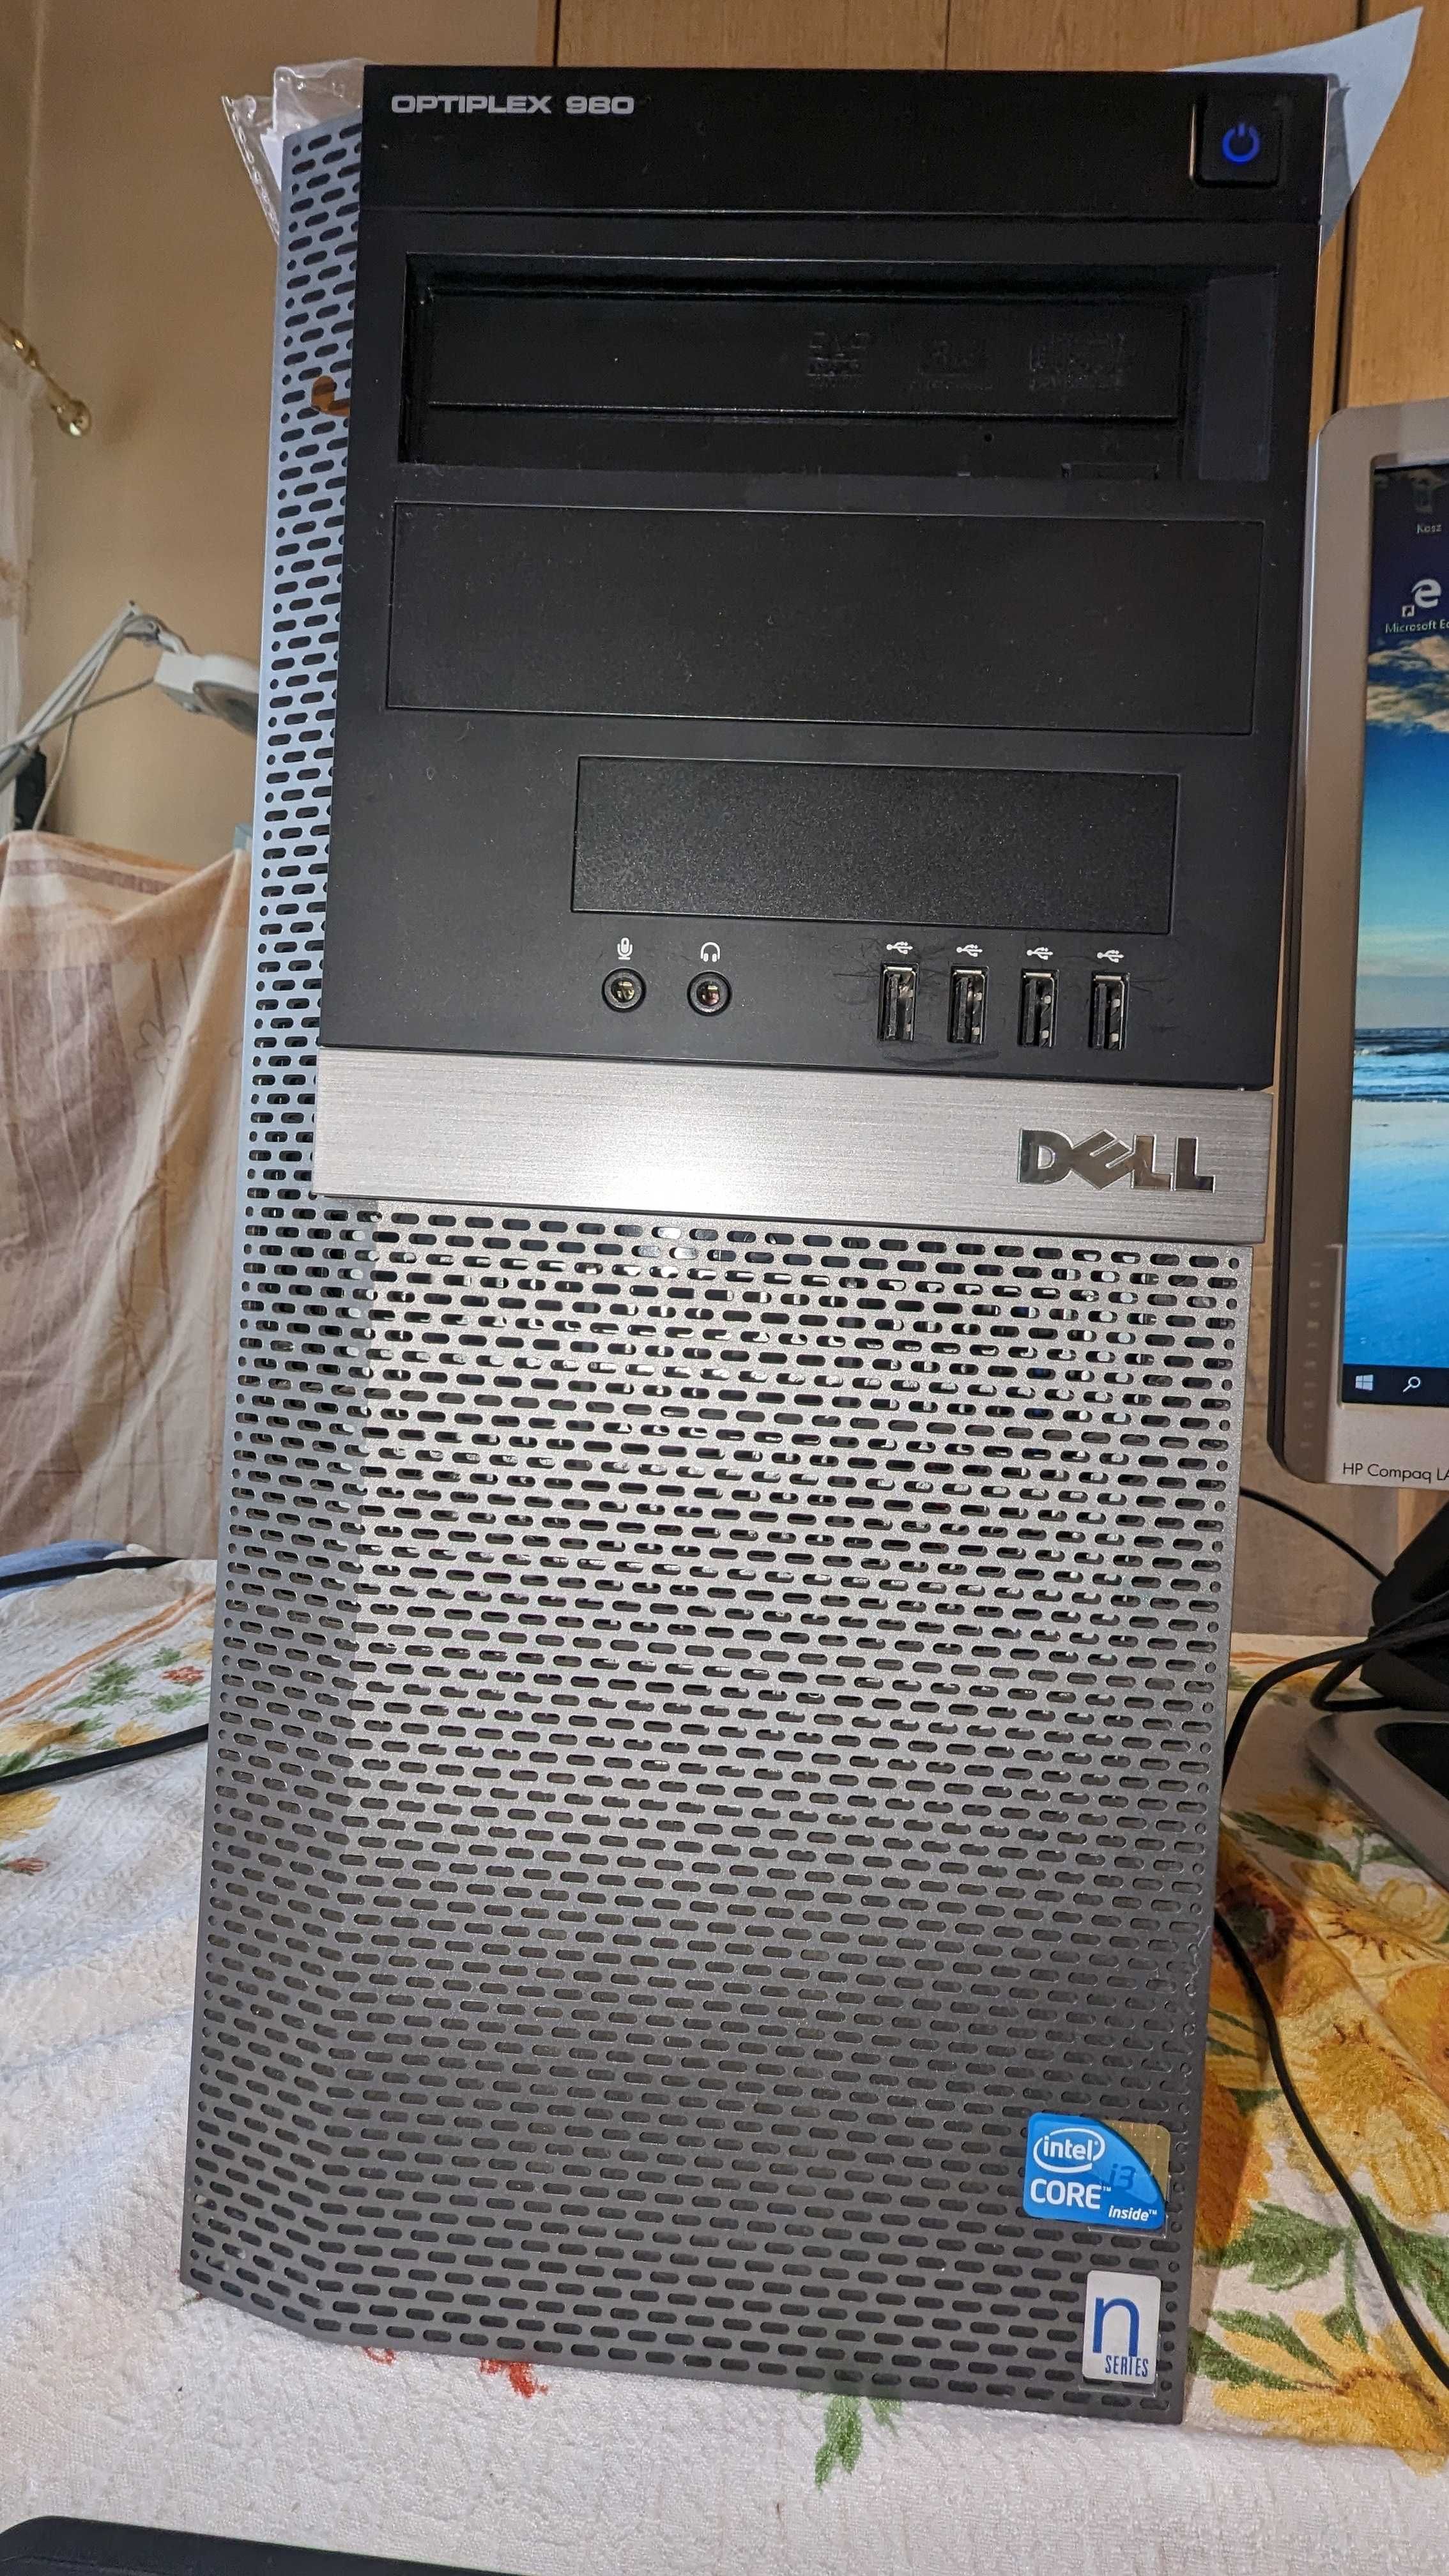 Komputer DELL Optiplex 980 komplet.